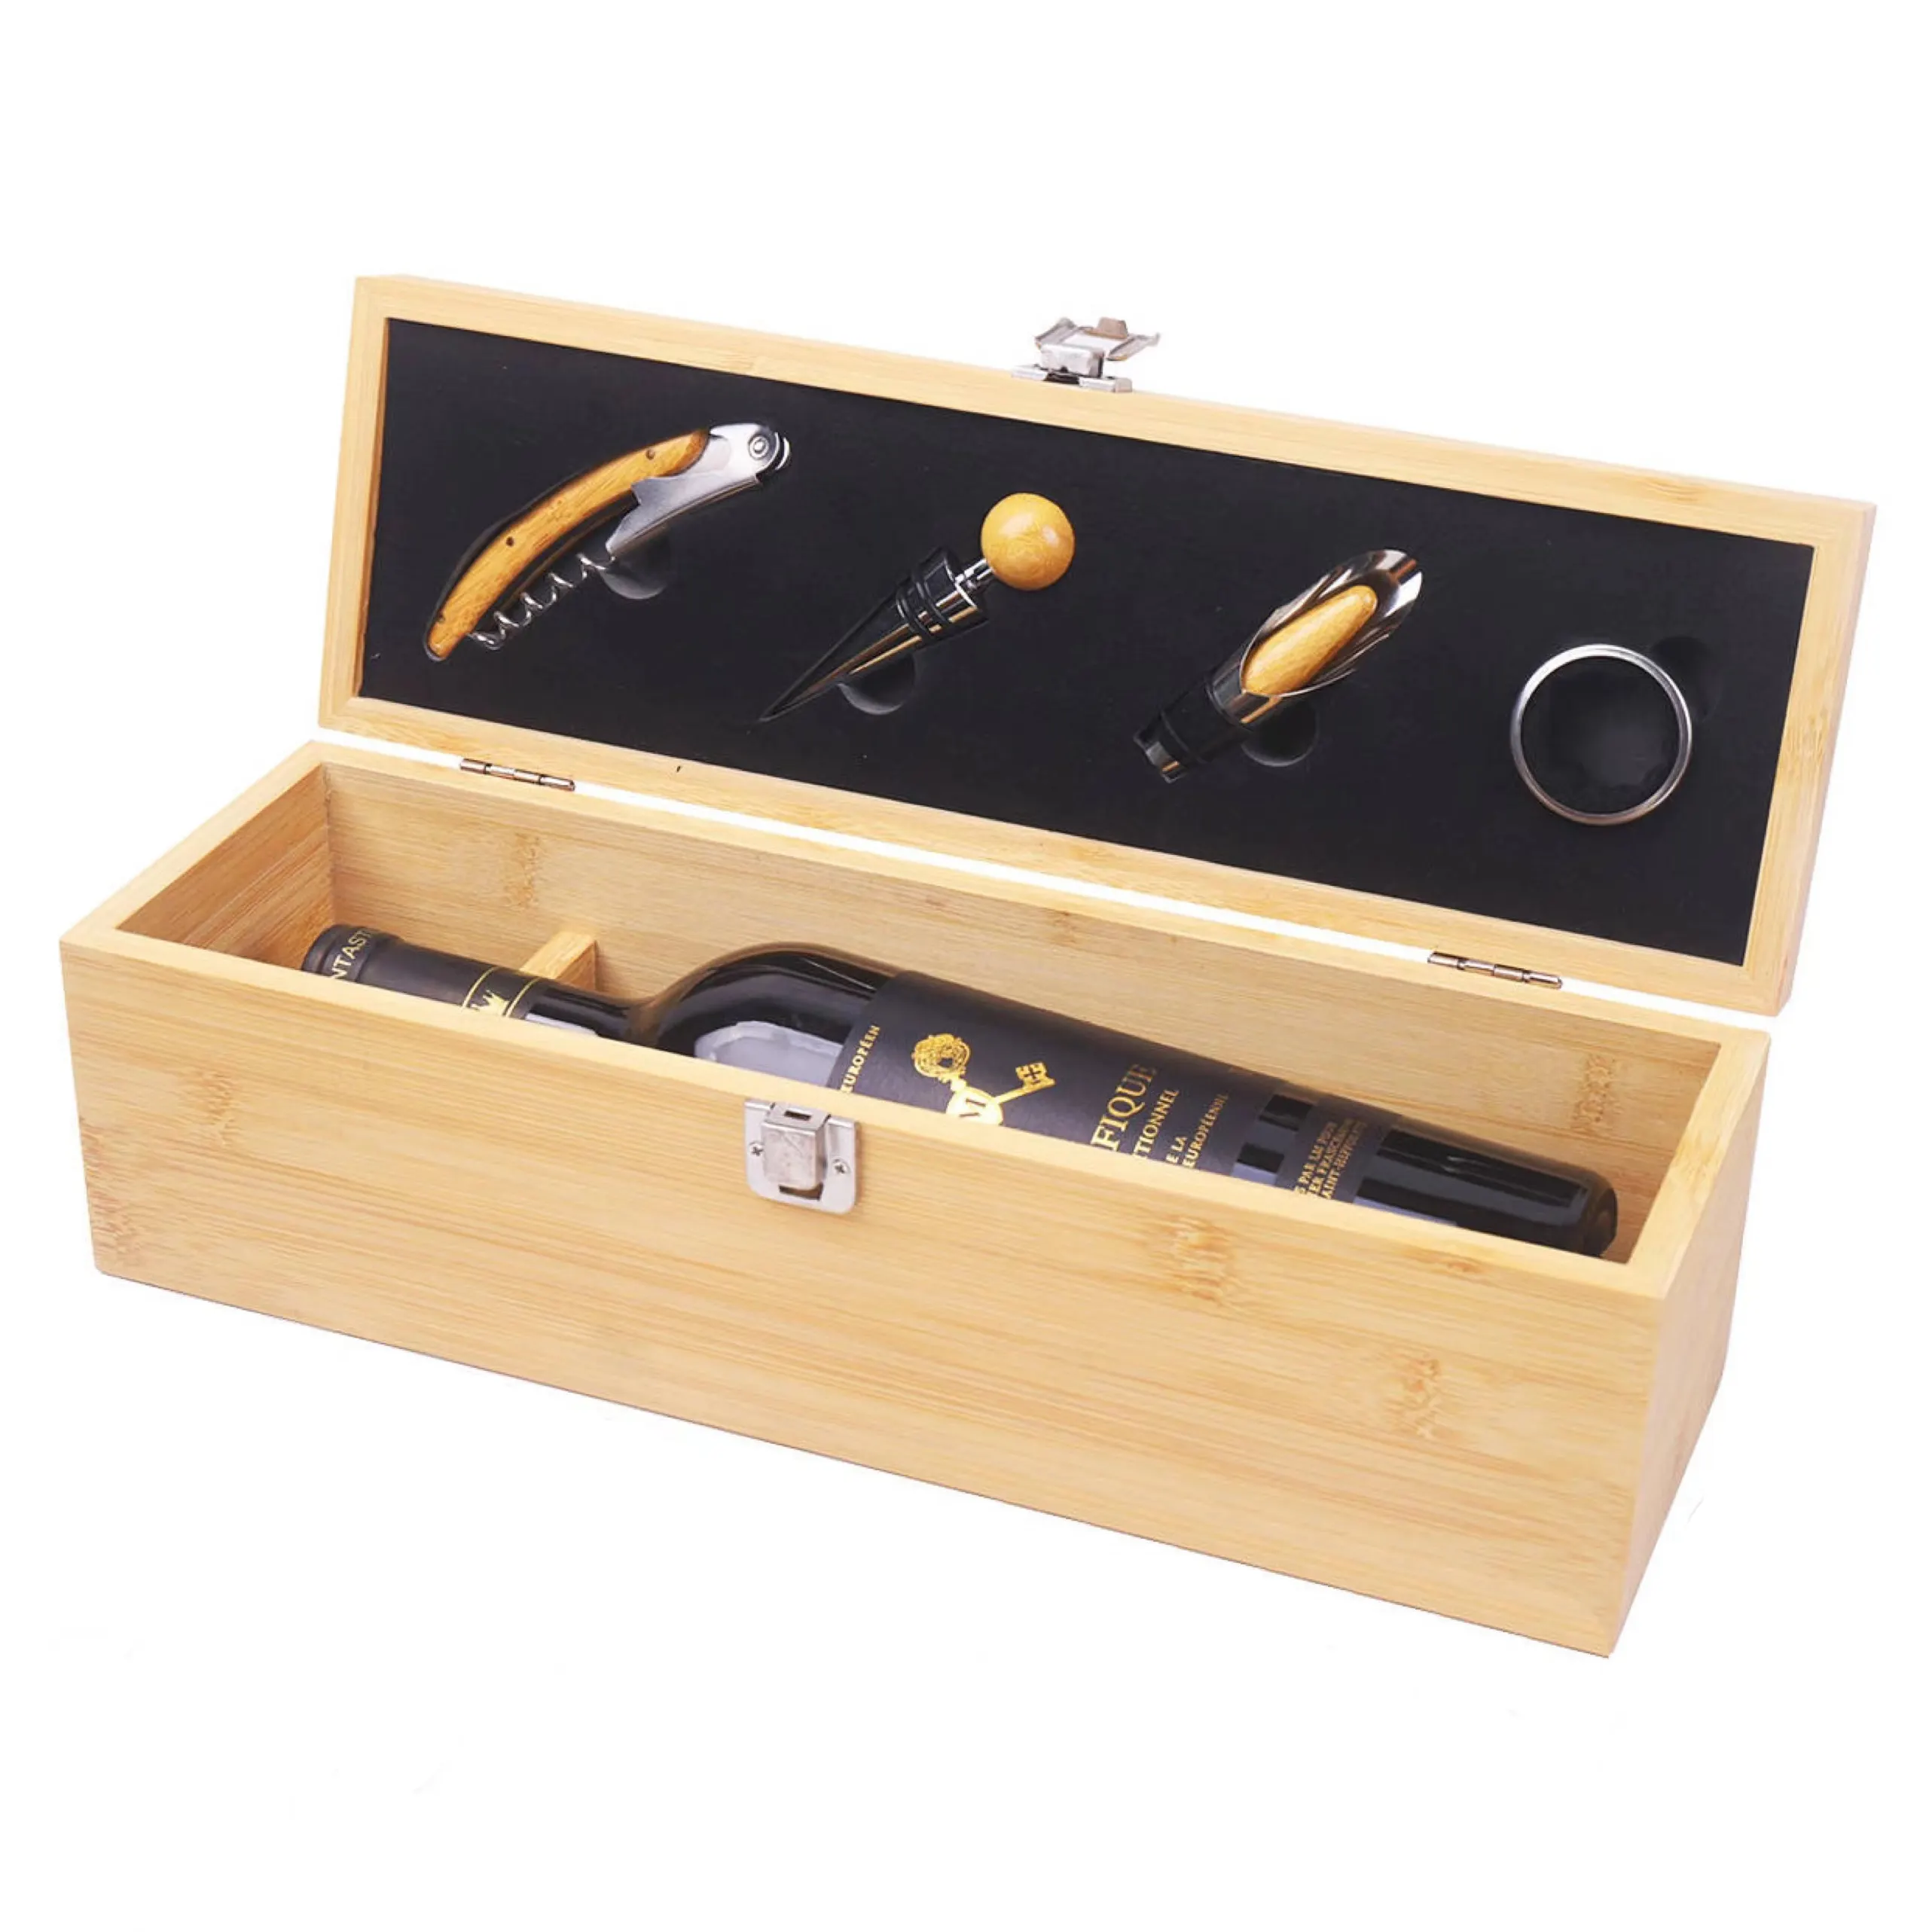 फैक्टरी कस्टम वाइन वाइनरी बांस वाइन बॉक्स बांस बोतल ओपनर सहायक उपकरण व्यावसायिक उपहारों के लिए उपयुक्त सेट